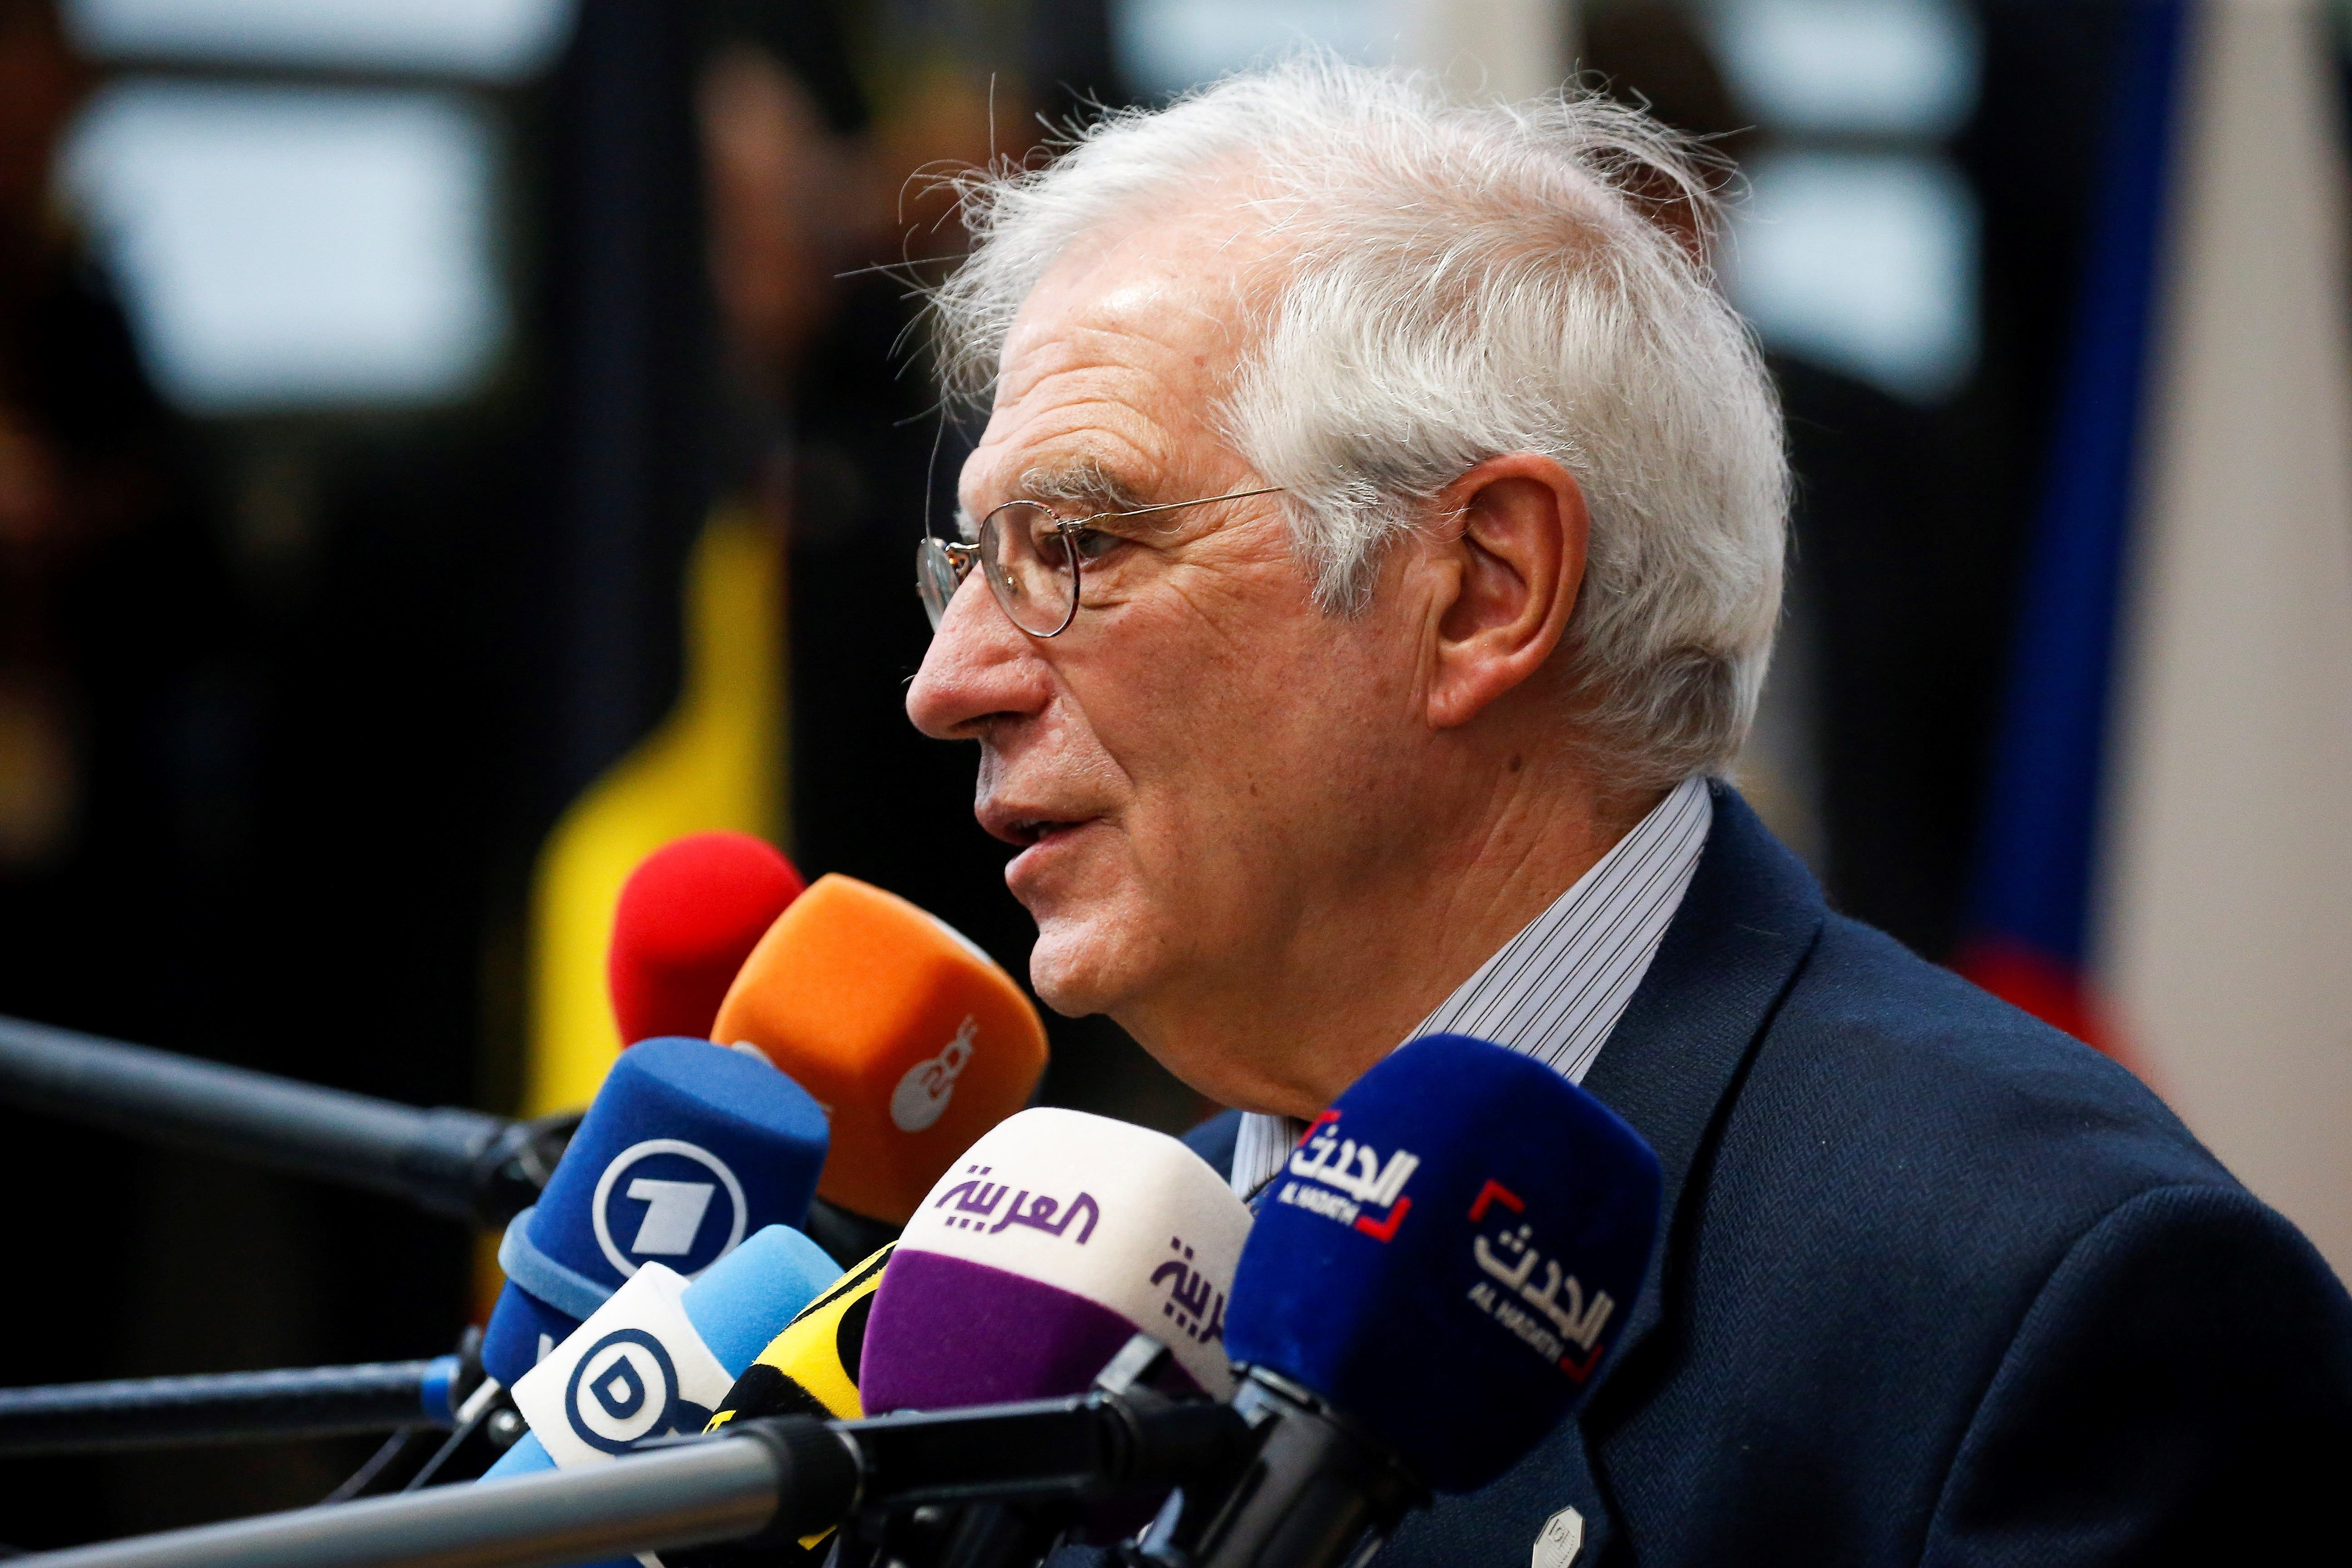 Borrell ve una grave violación la suspensión de diputados (pero no en Catalunya)